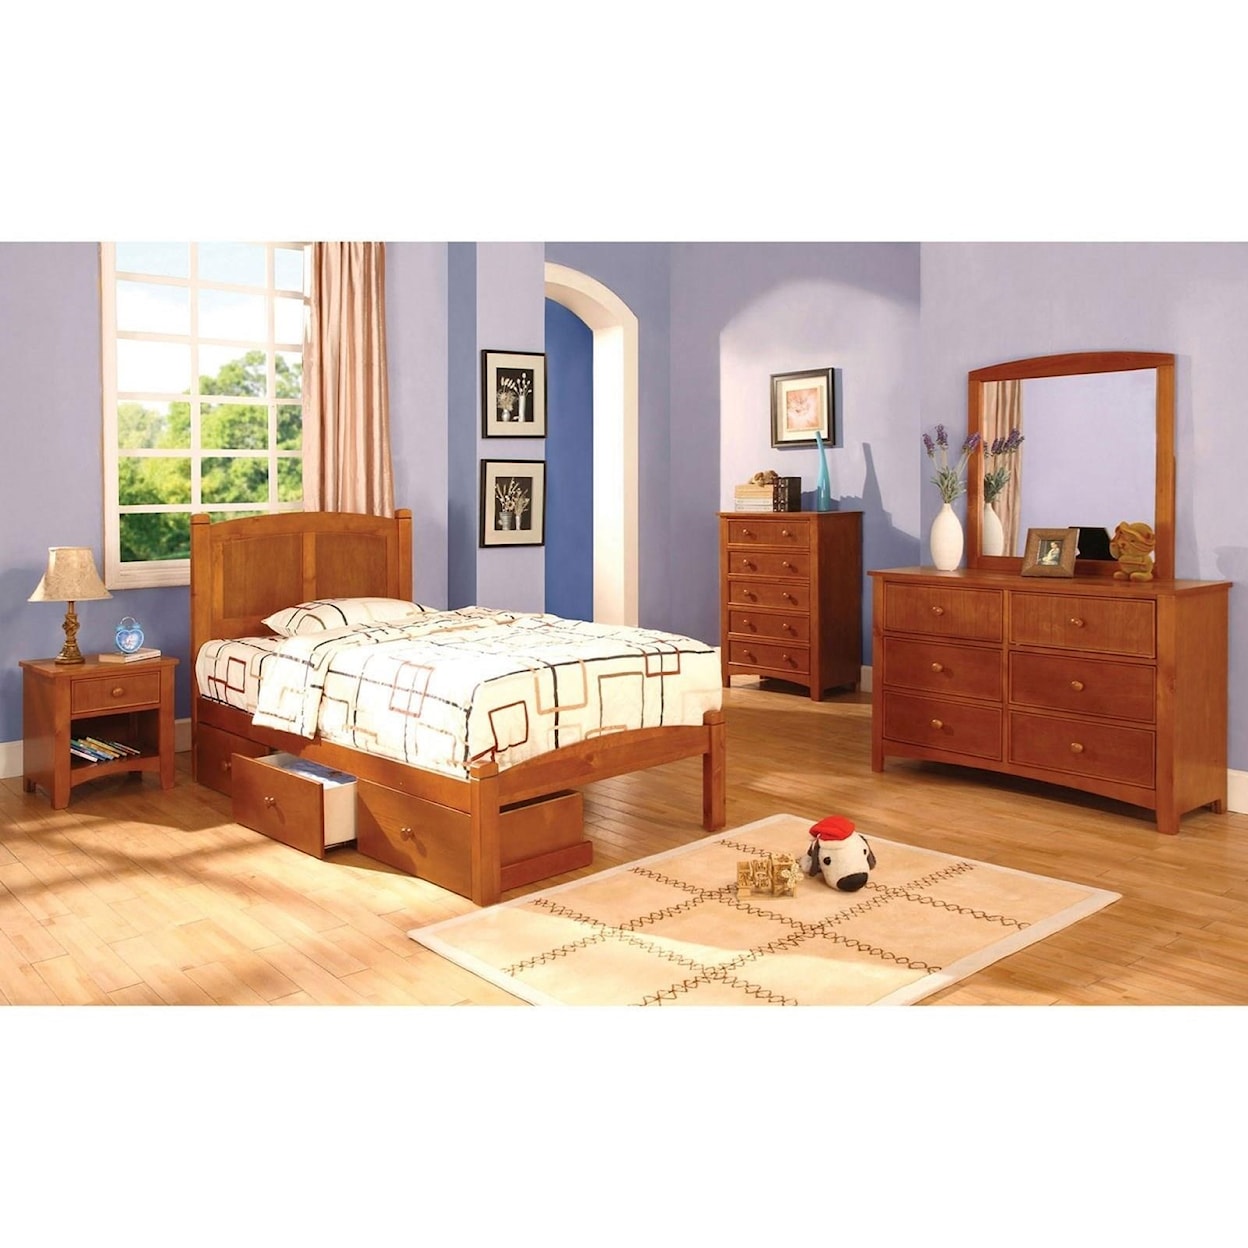 Furniture of America Cara Twin Bed